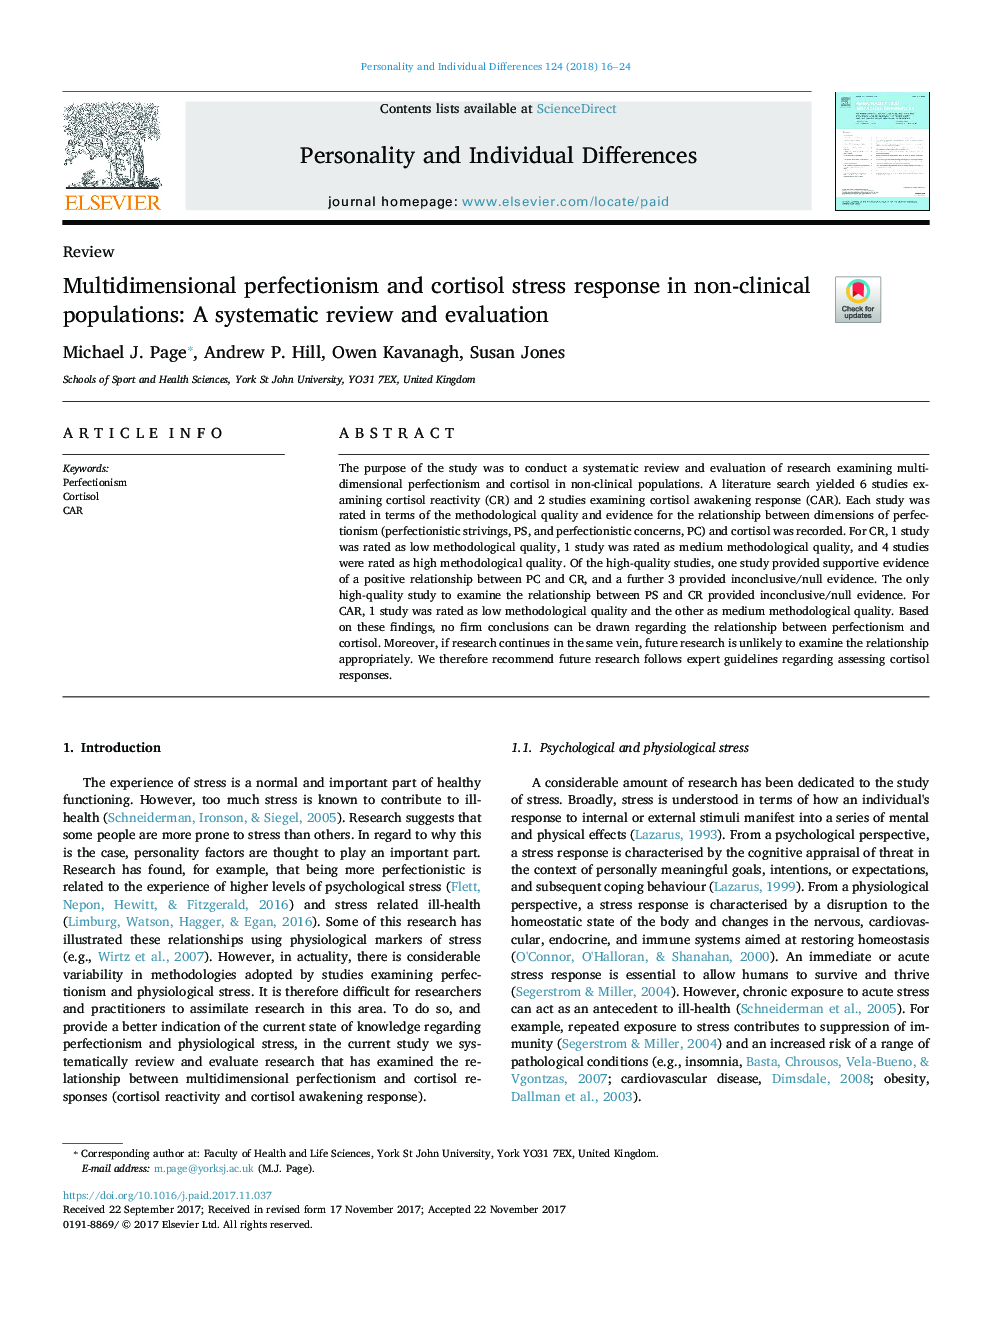 کمال گرایی چند بعدی و پاسخ استرس کورتیزول در جمعیت های غیر بالینی: بازبینی و ارزیابی سیستماتیک 